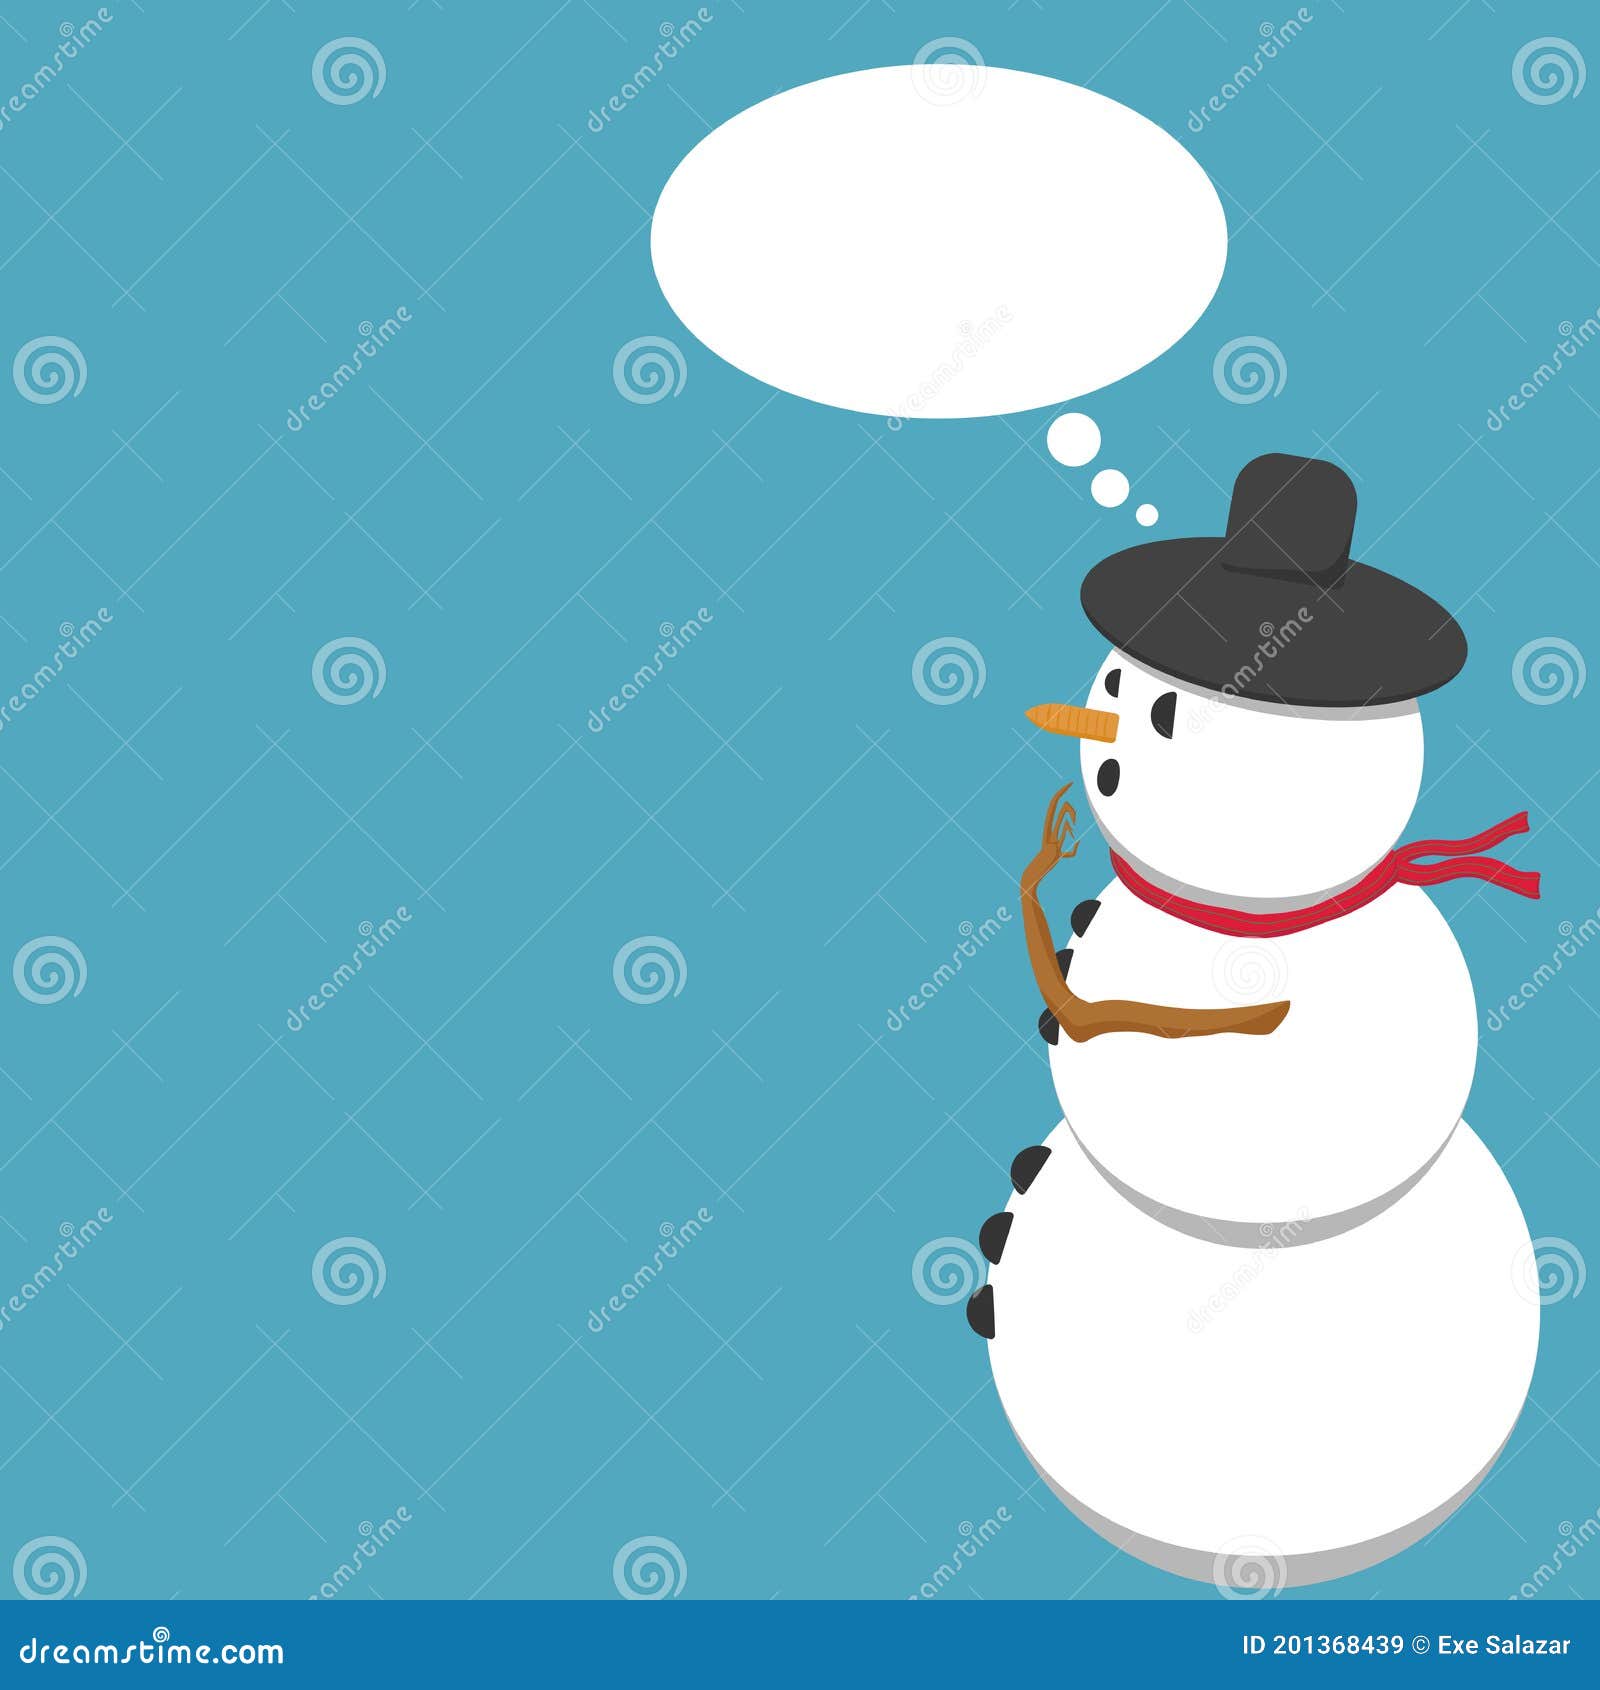 Un Mono De Nieve En Un Sombrero Y Un Pañuelo Como Hes Preguntarme Algo  Stock de ilustración - Ilustración de sombrero, idea: 201368439